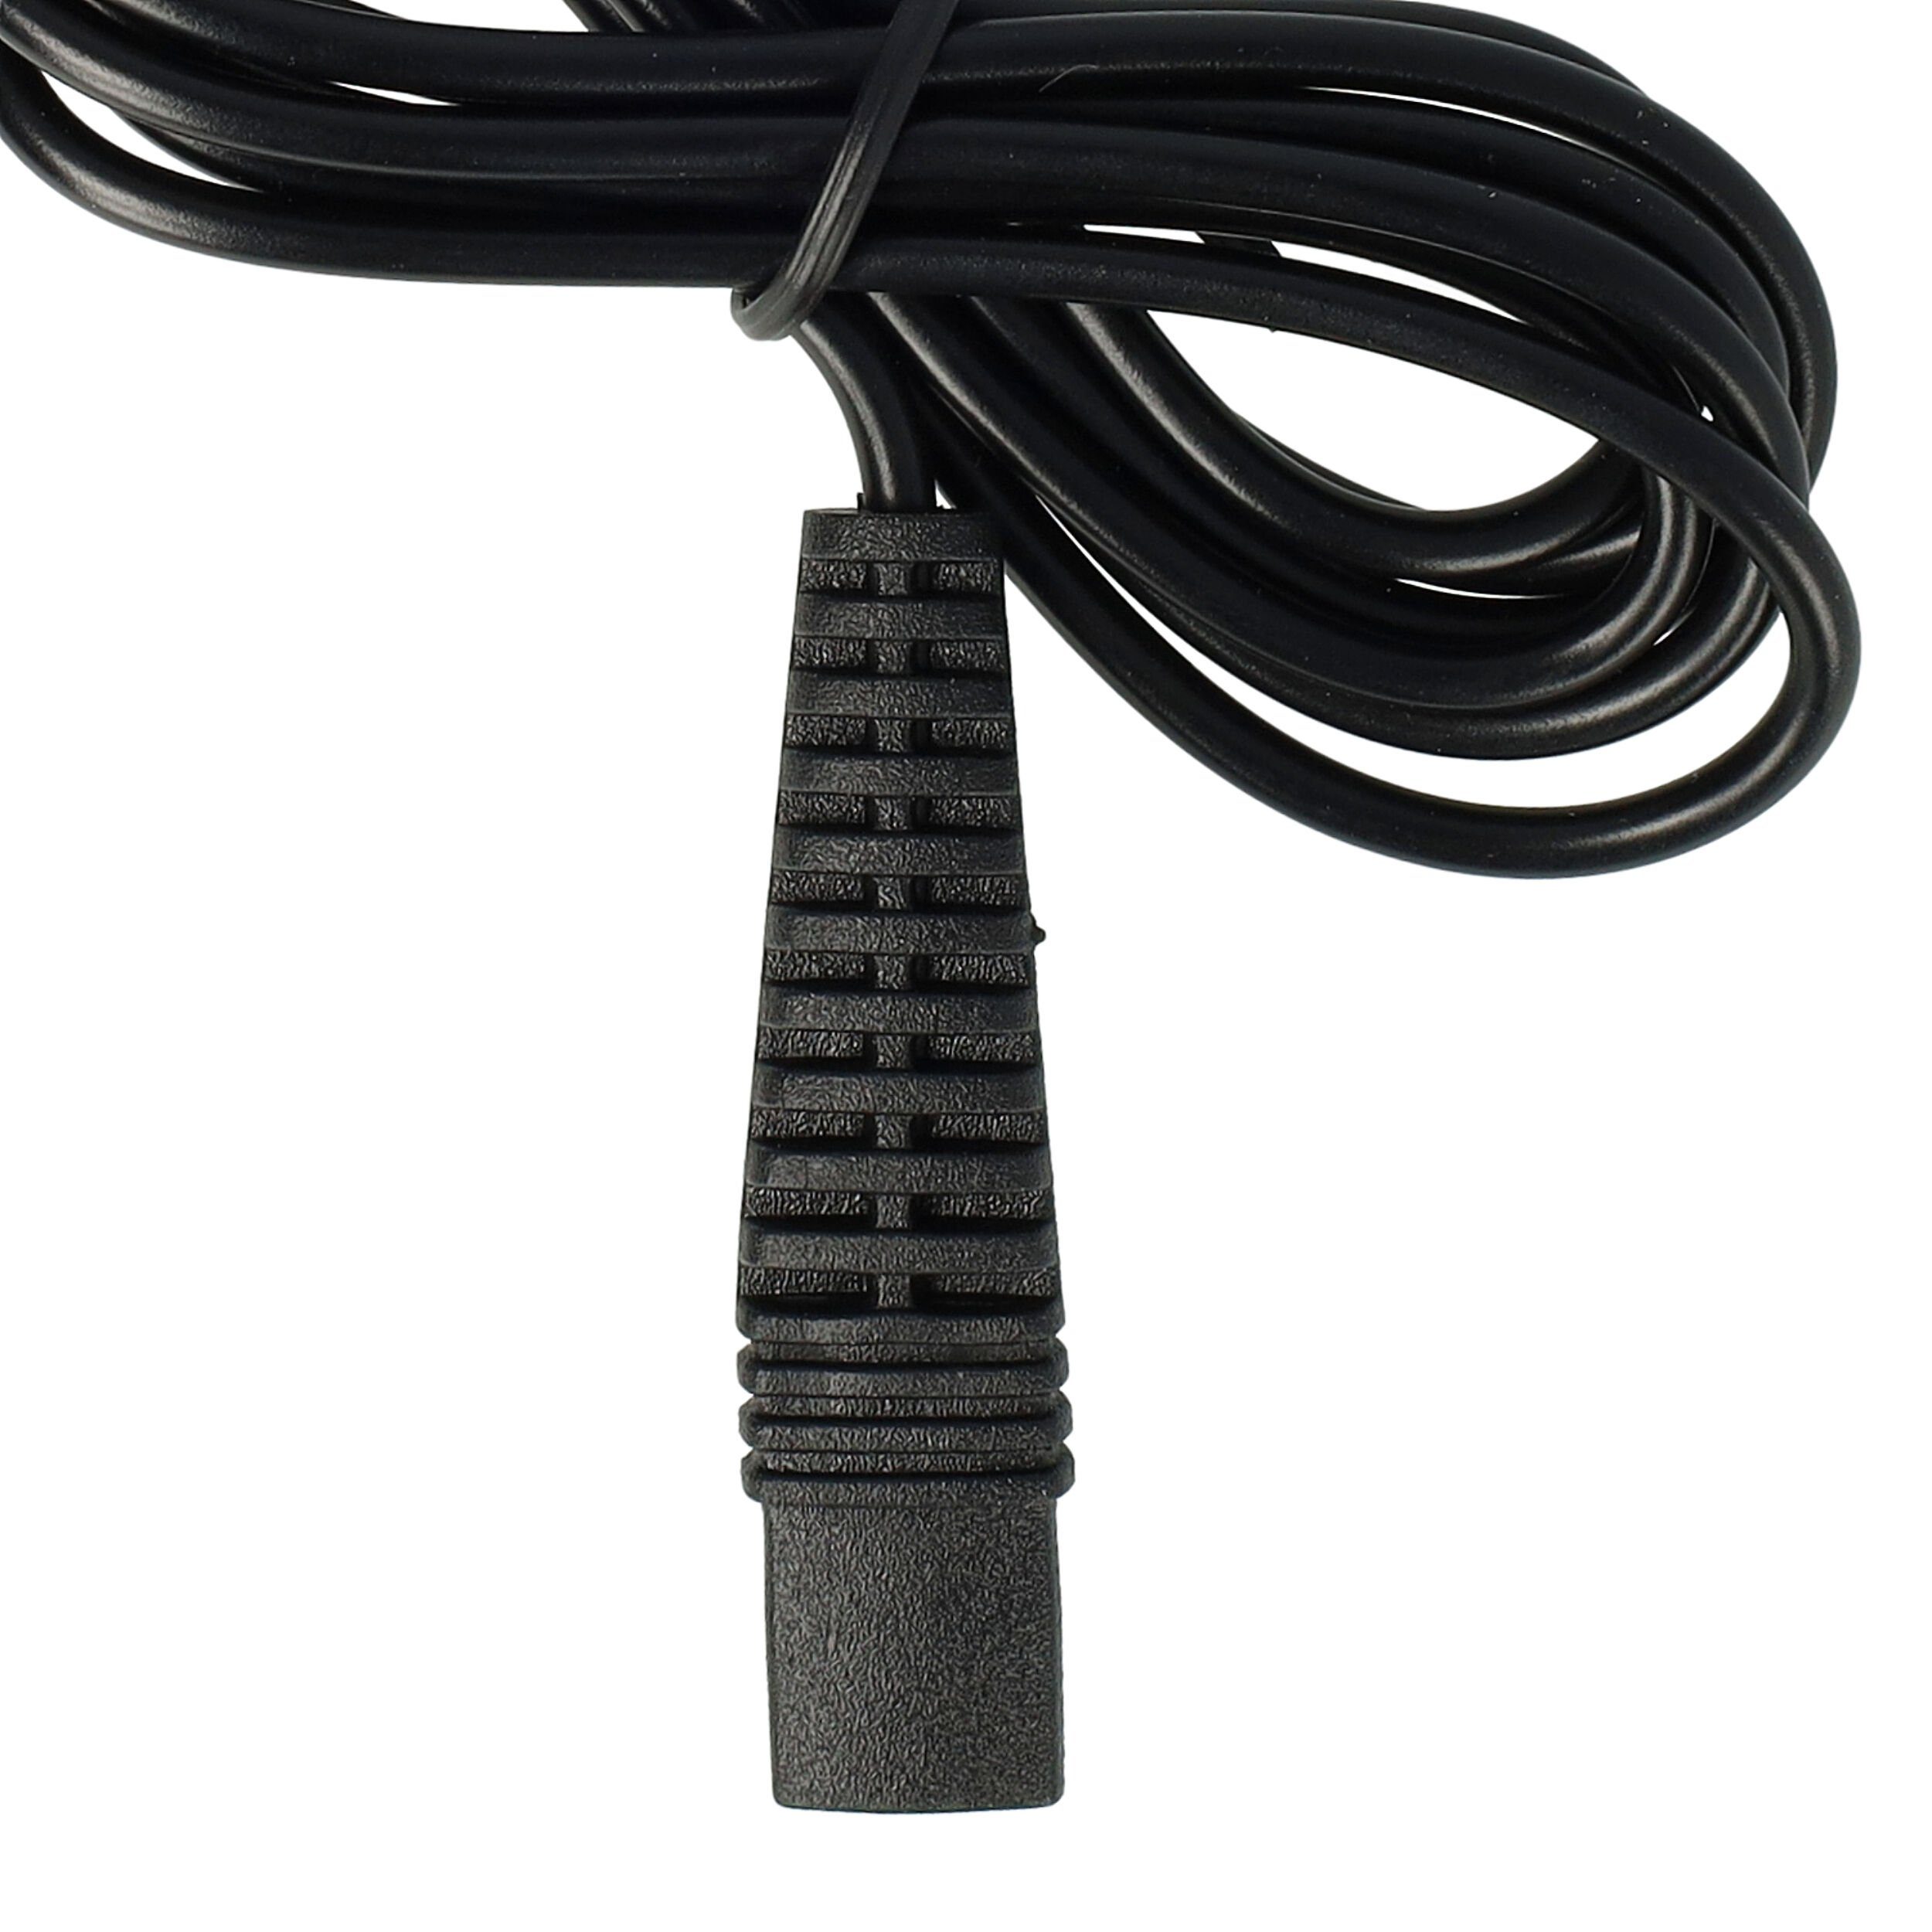 vhbw 5612, für SmartControl3 passend Series TriControl Braun Elektro-Kabel 3